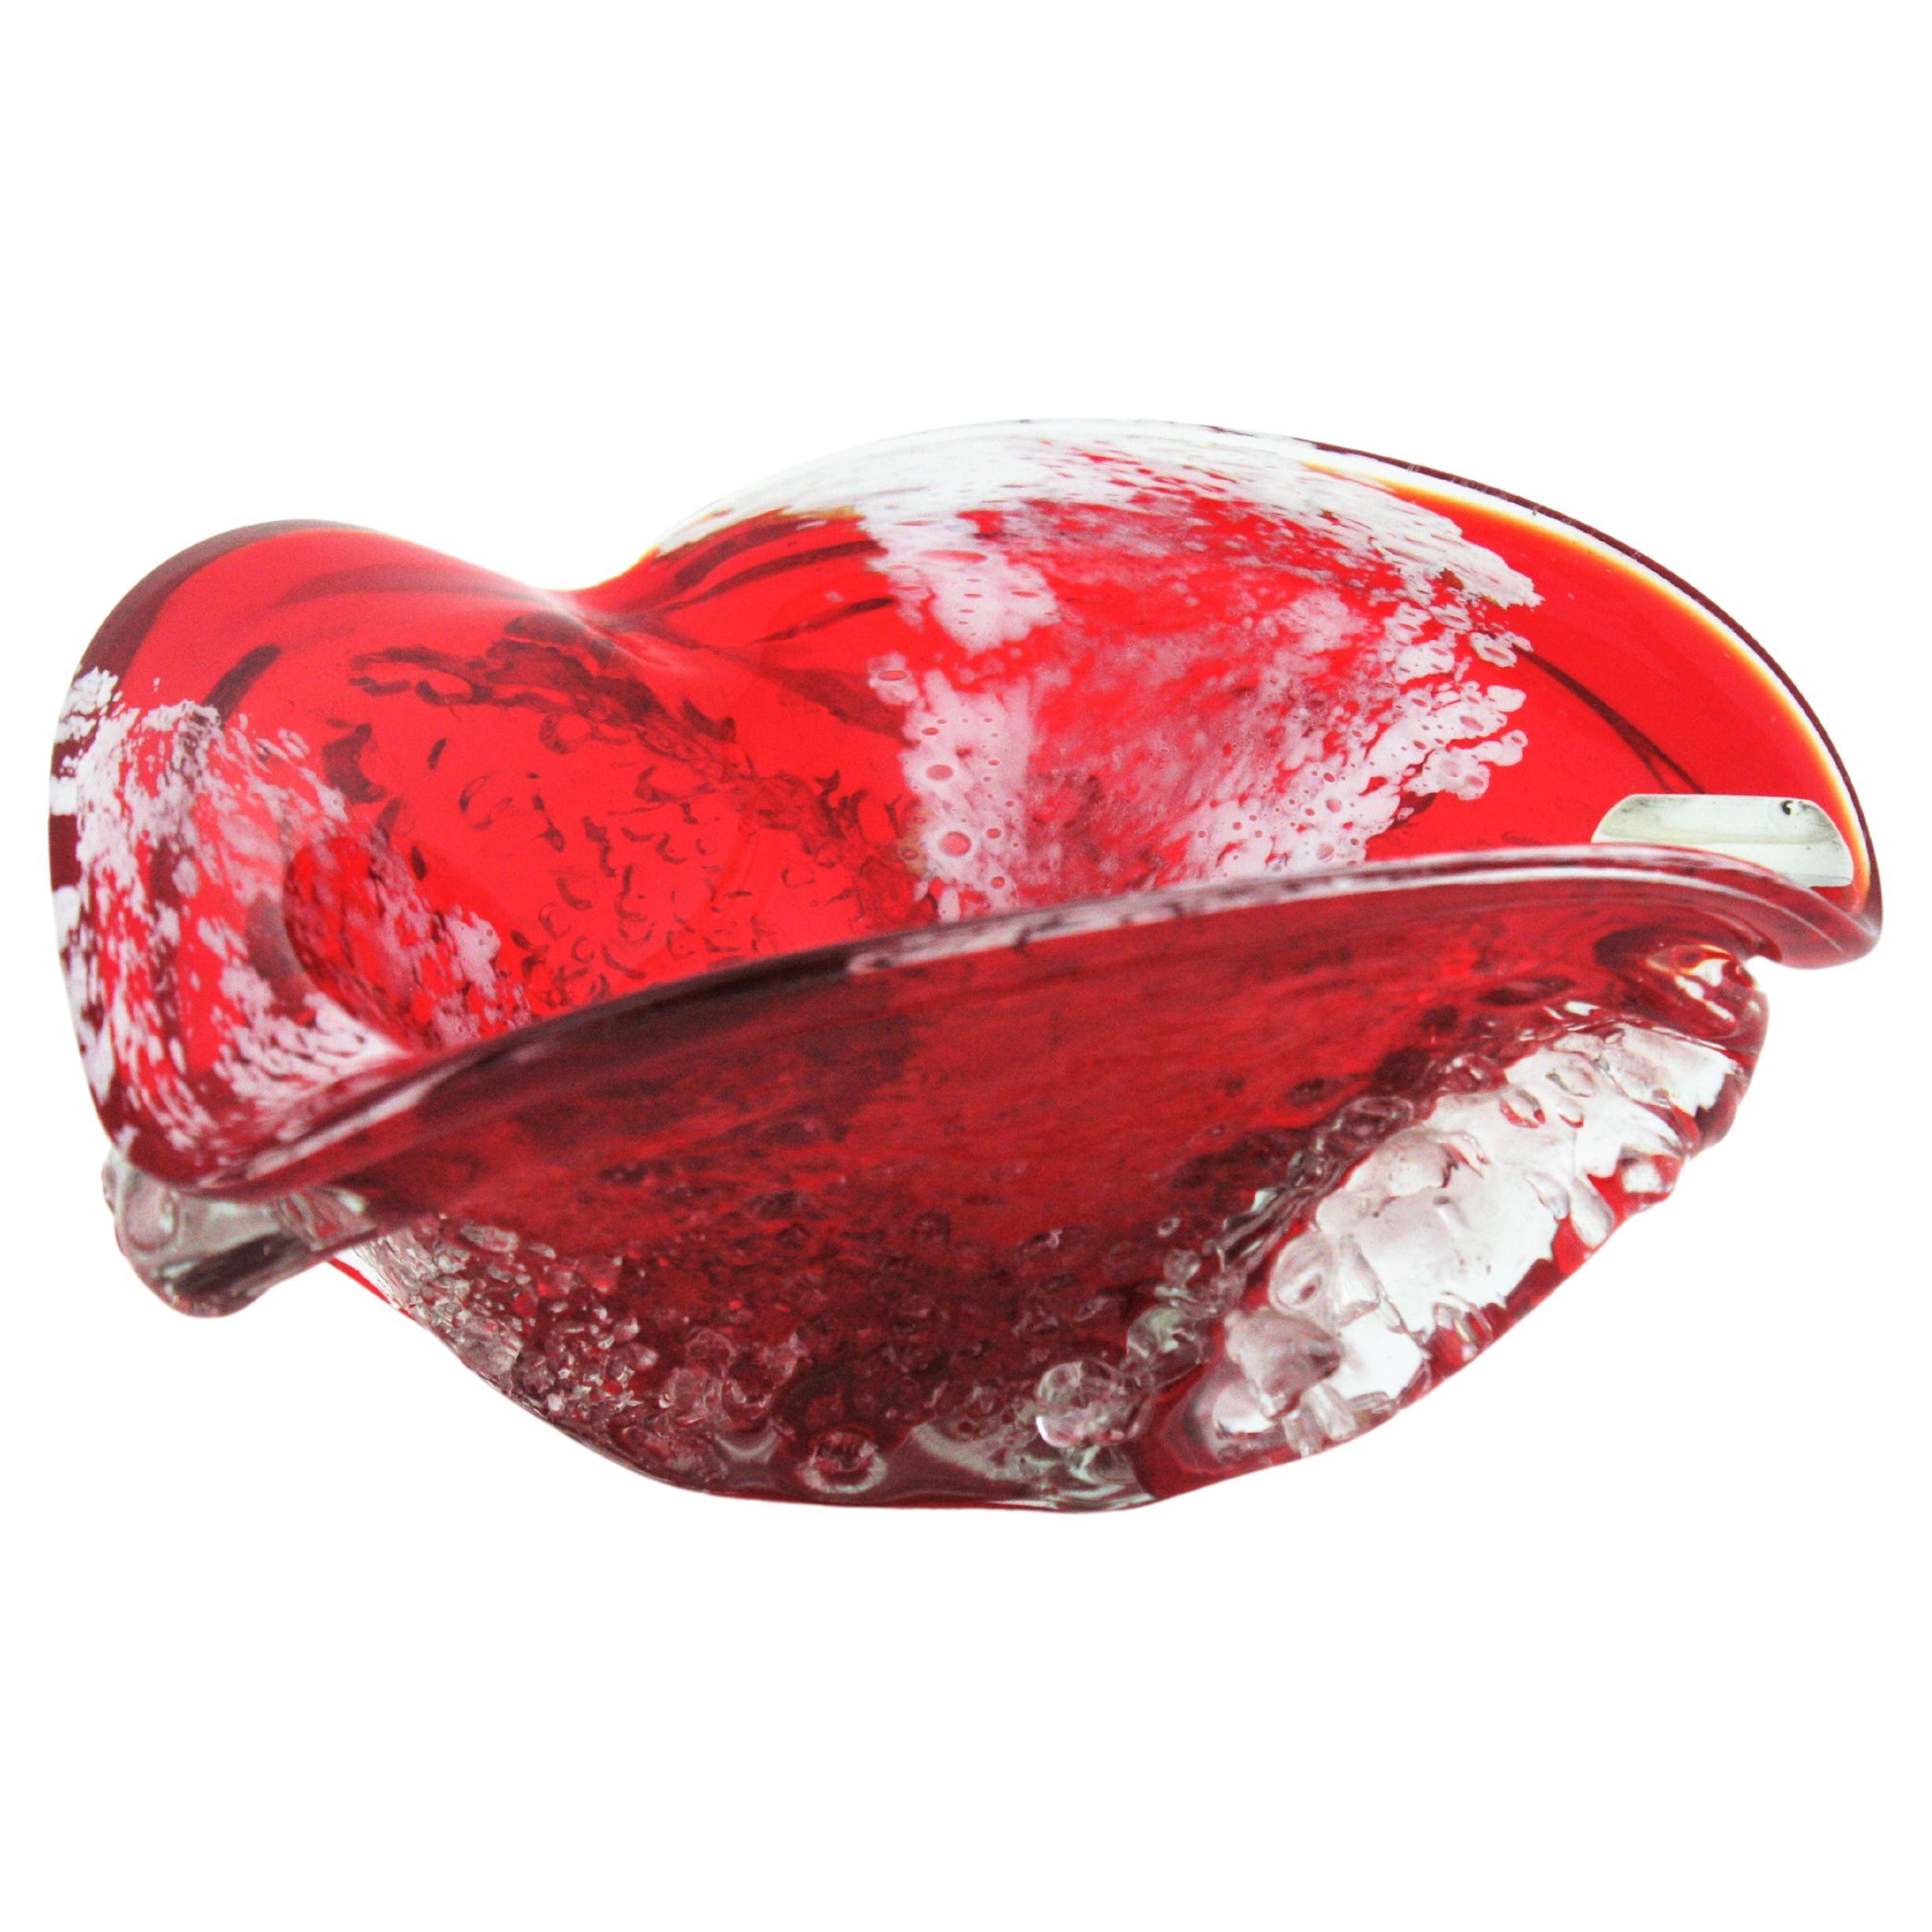 Aschenbecher aus mundgeblasenem Macette-Murano-Glas, rotes, weißes und klares Glas, Italien, 1950er Jahre.
Diese auffällige dreieckige Schale besteht aus rotem Glas, das in klares Glas getaucht ist. Es hat weiße Akzente und die äußere Oberfläche ist